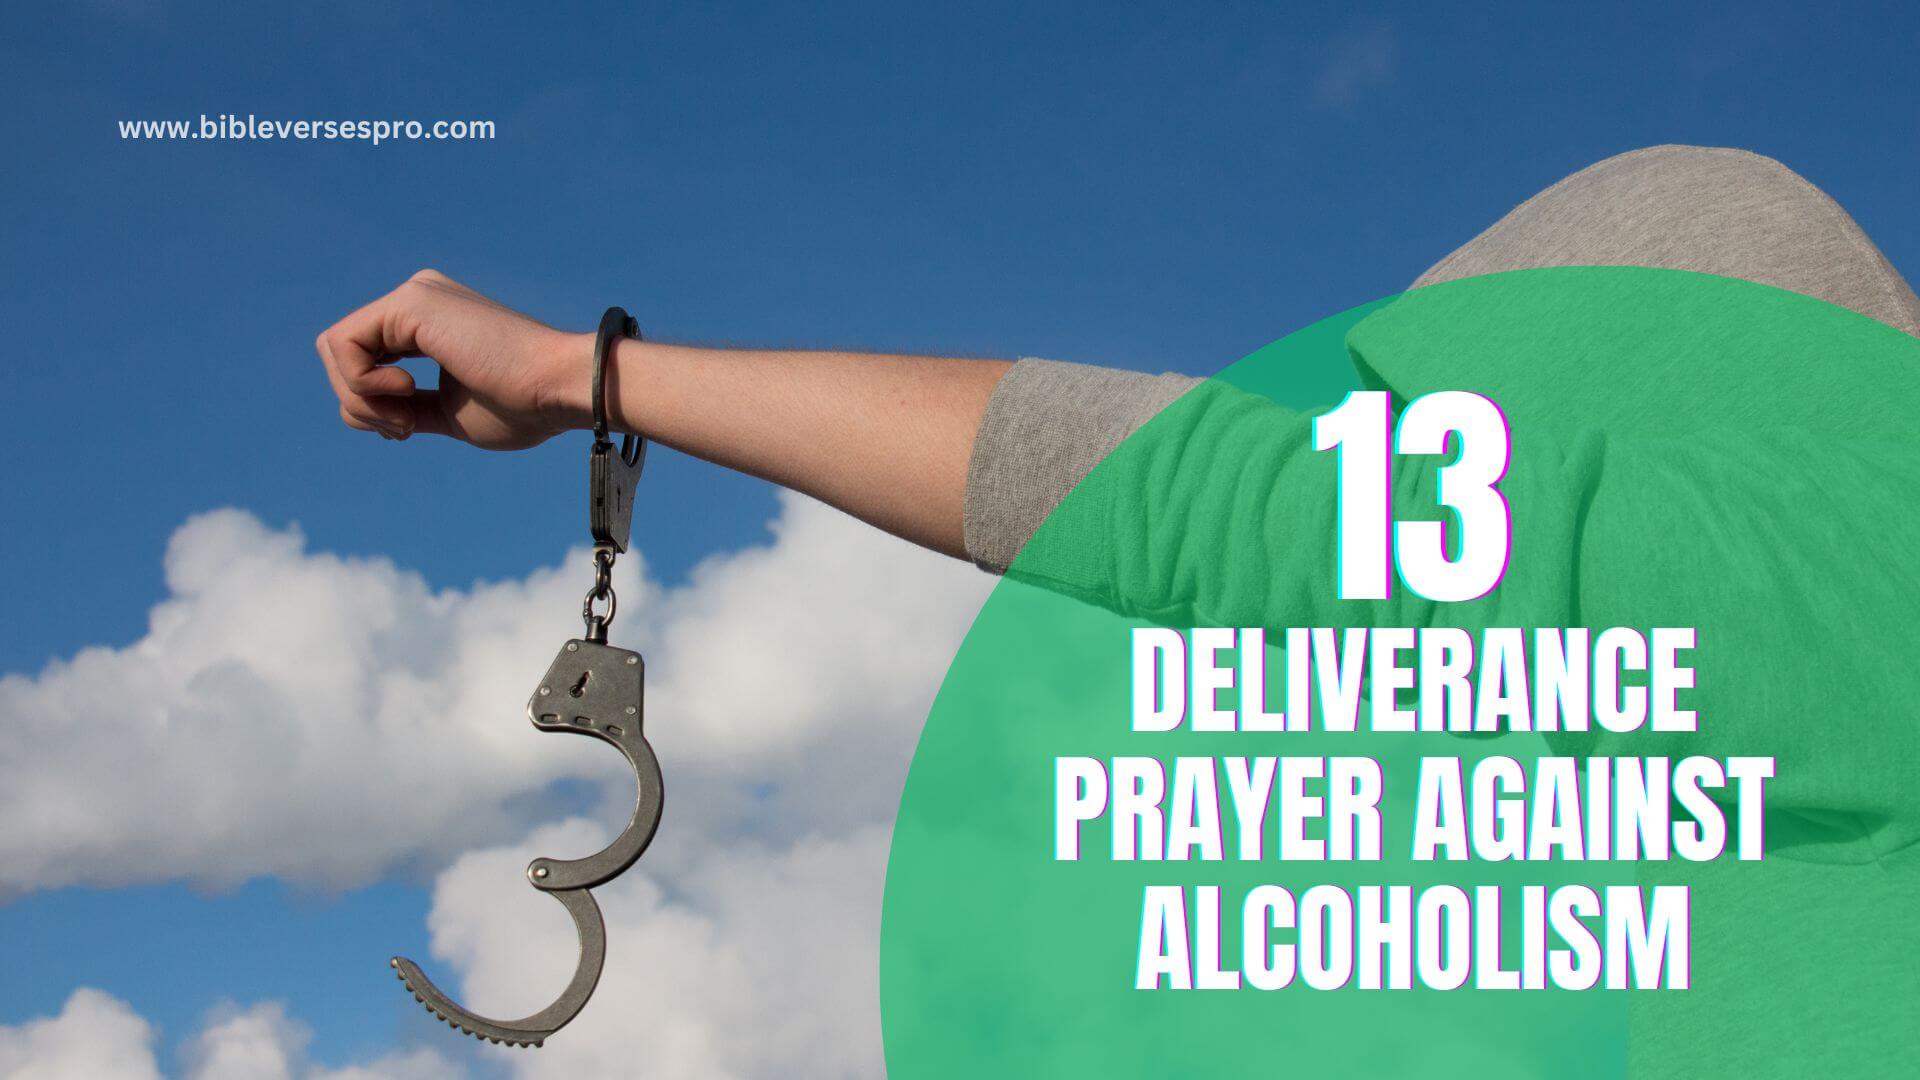 Deliverance Prayer Against Alcoholism